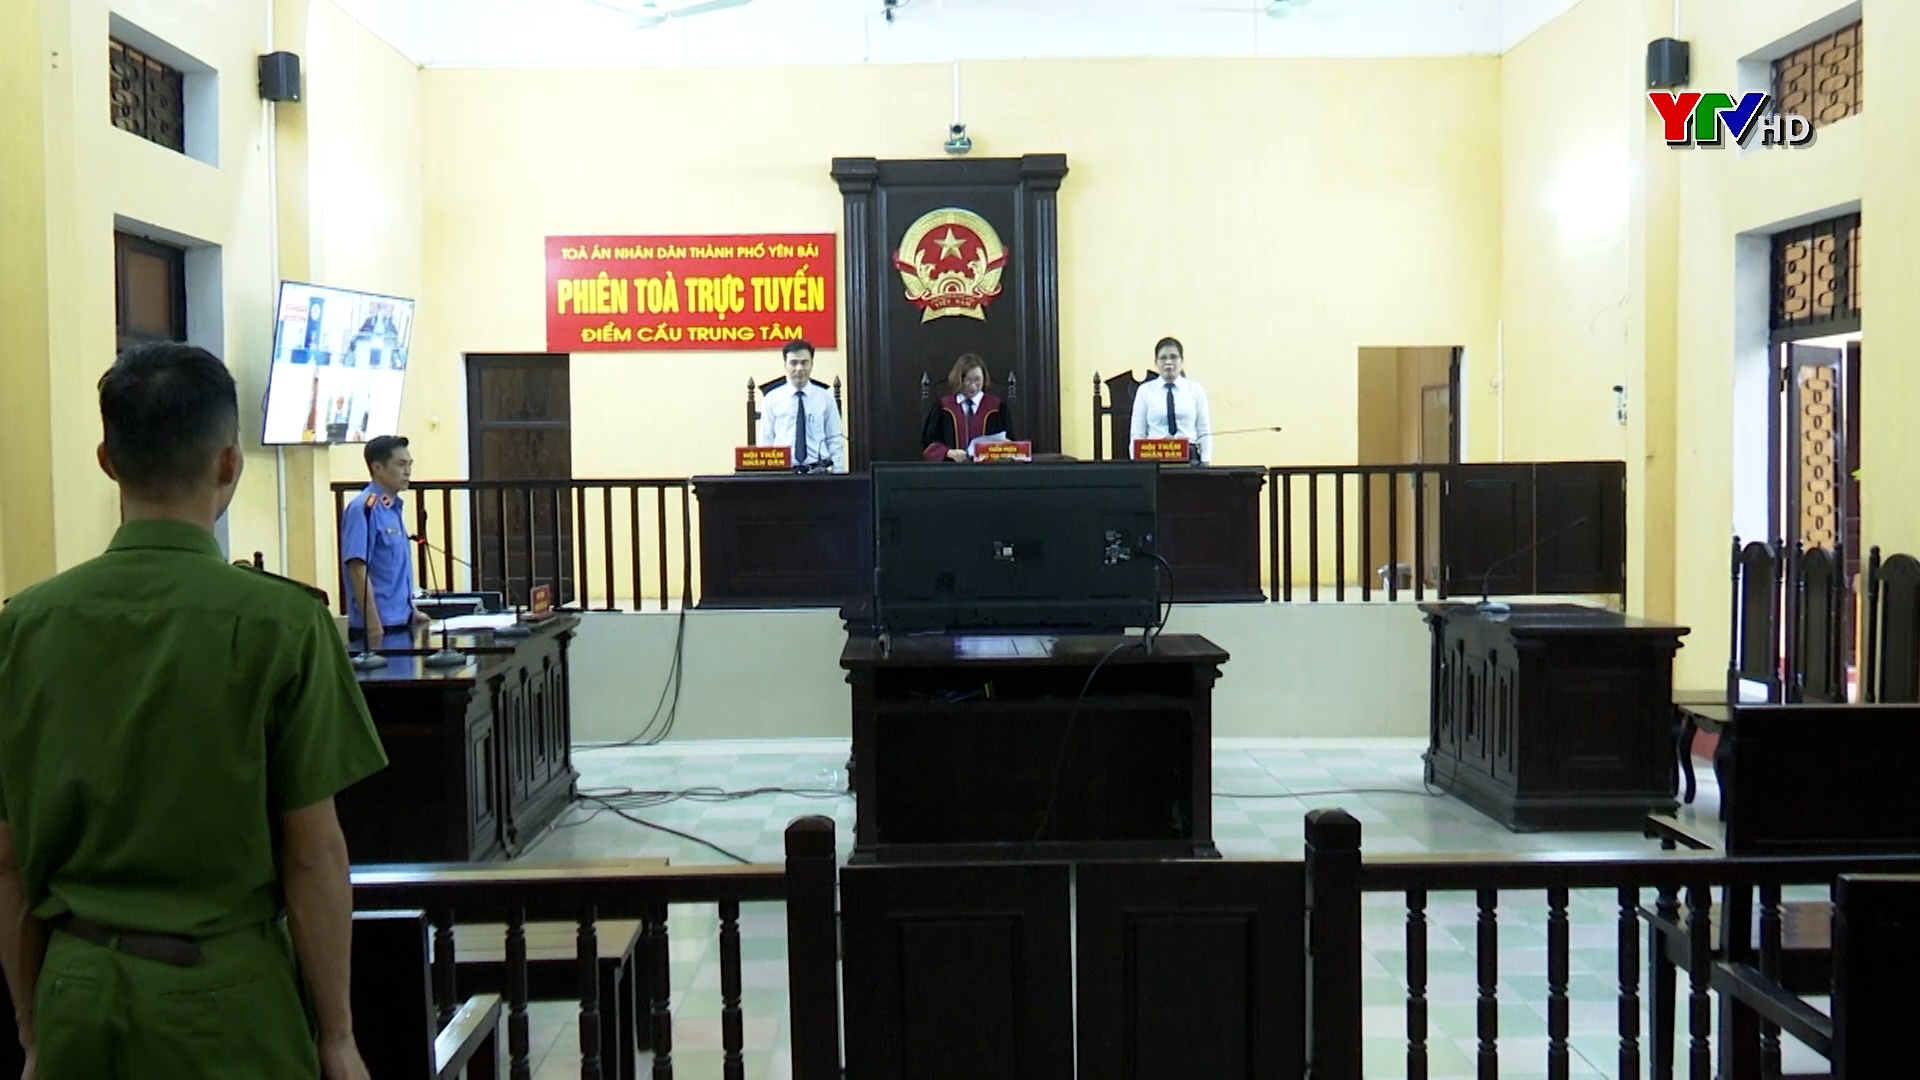 Tòa án nhân dân thành phố Yên Bái tổ chức các phiên tòa xét xử trực tuyến